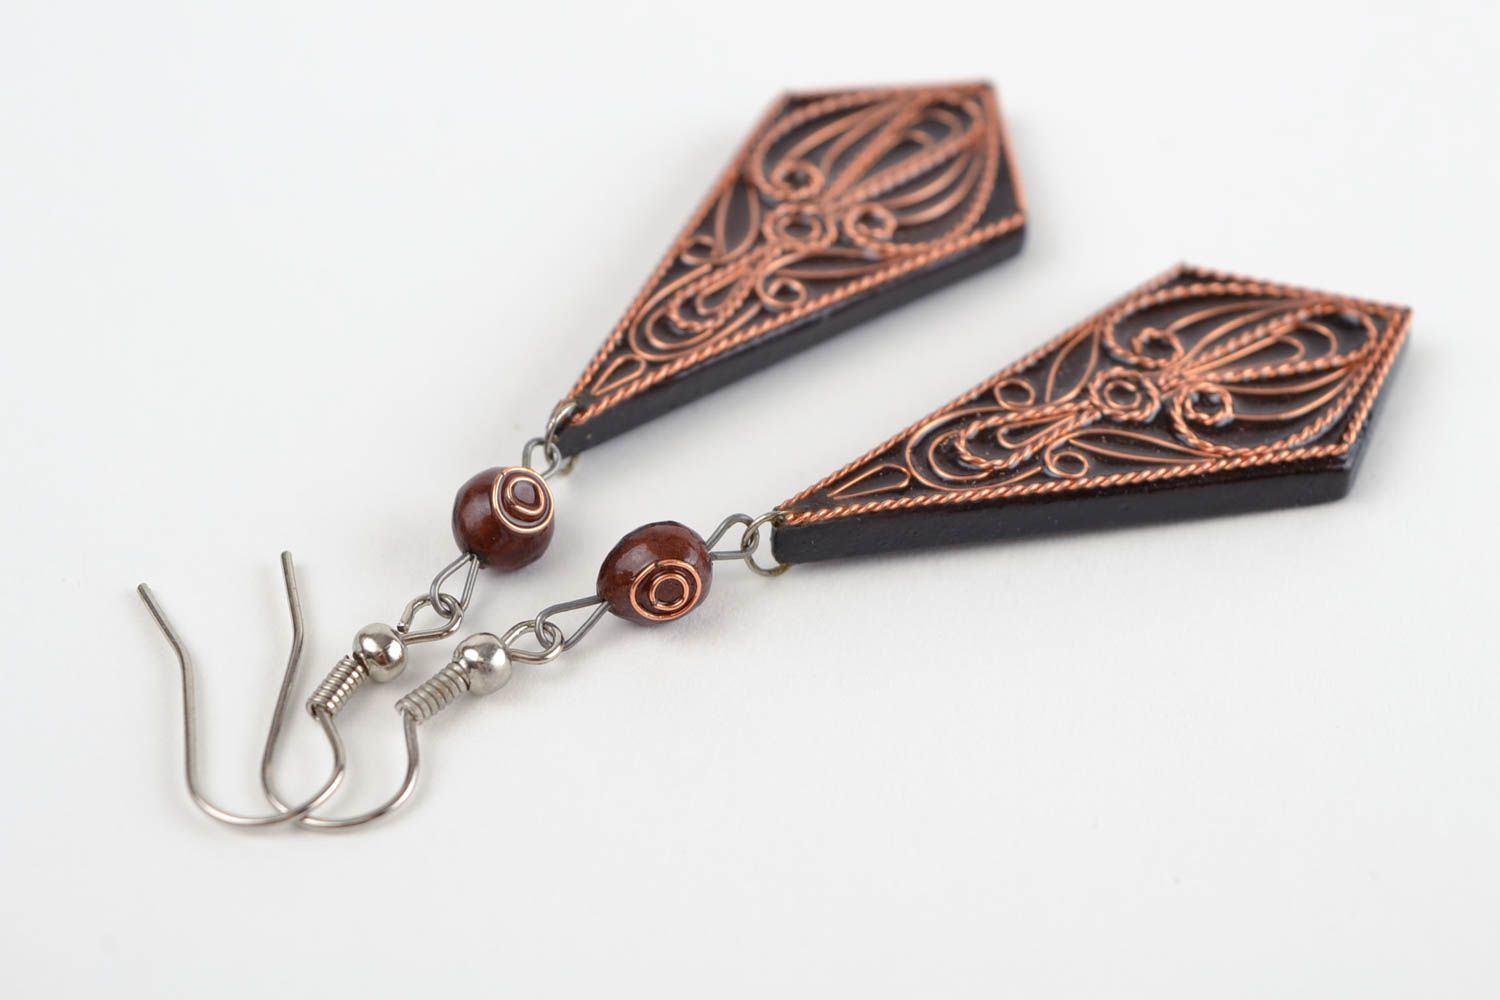 Handmade earrings cute earrings wooden jewelry designer accessories gift ideas photo 3